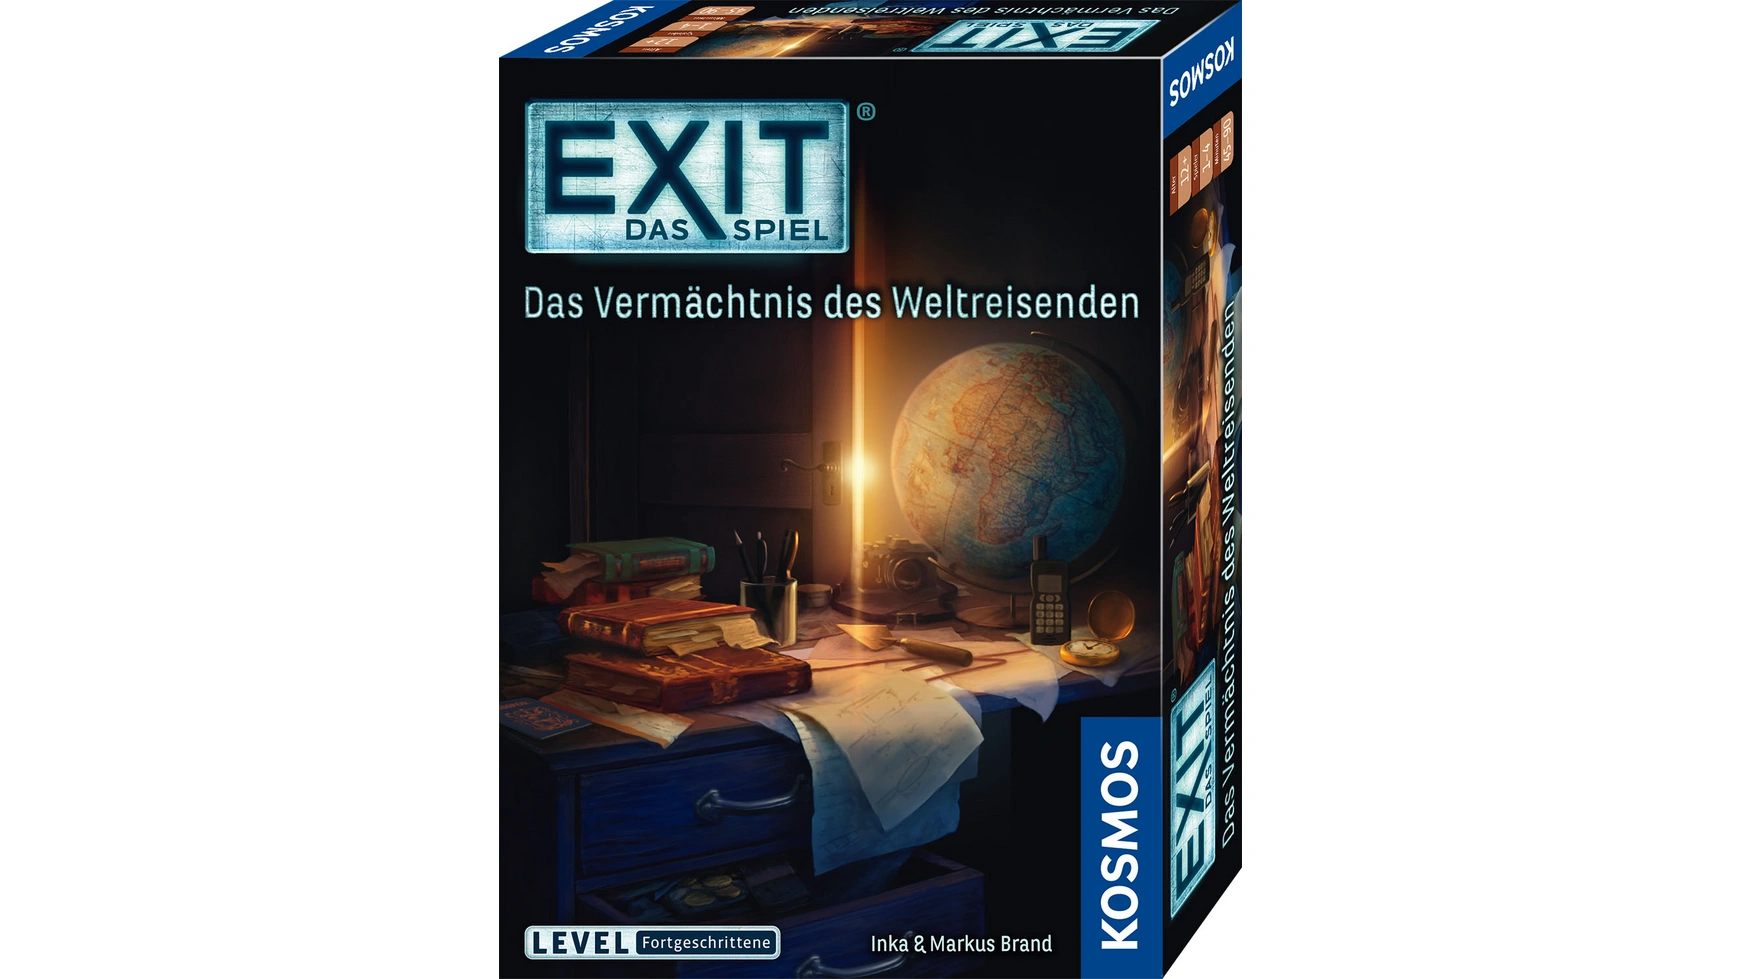 Exit игра: наследие путешественника по миру, уровень: продвинутый Kosmos